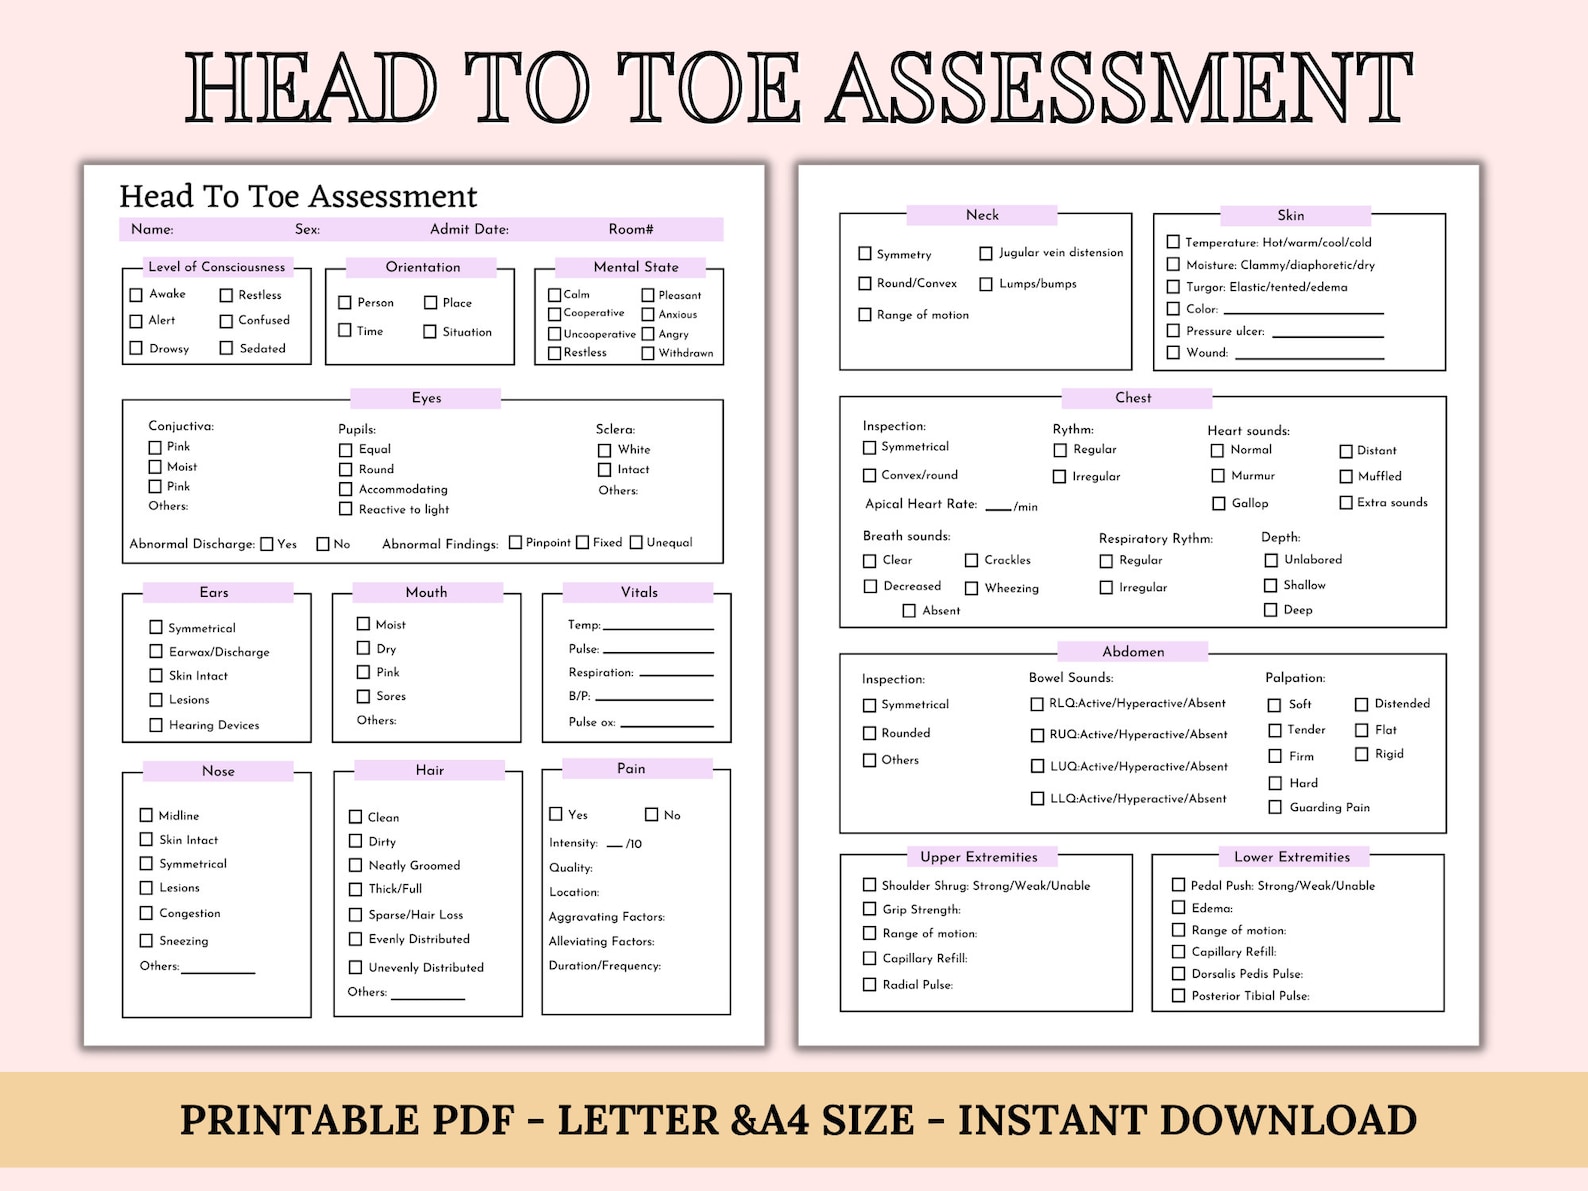 head-to-toe-assessment-template-nursing-checklist-nursing-etsy